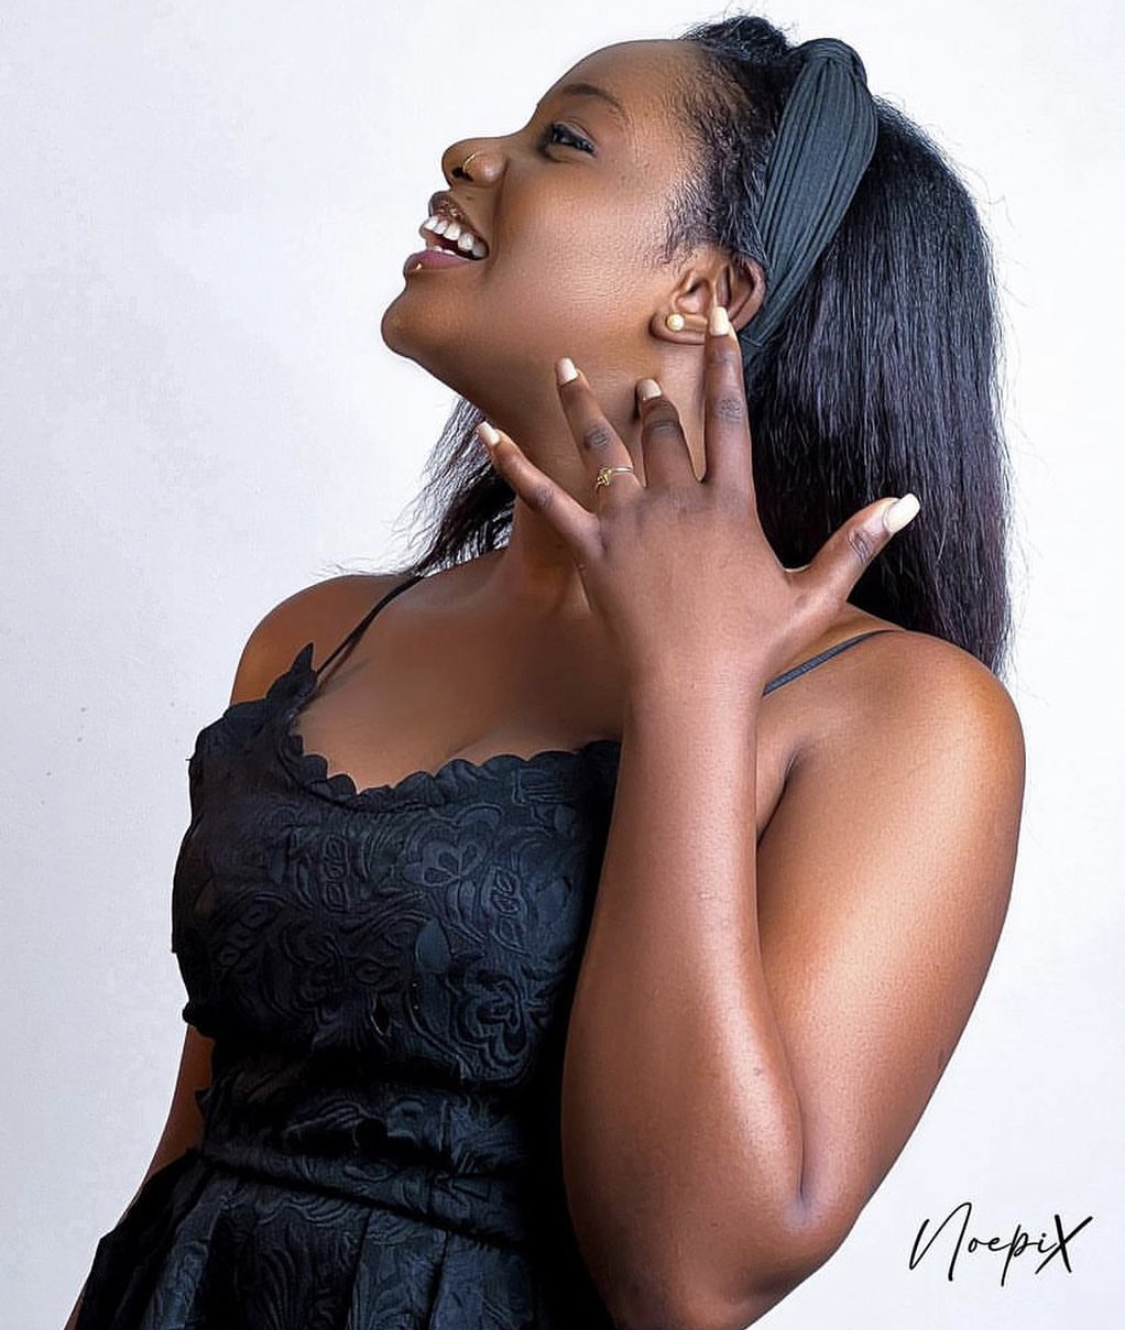 L’actrice Ndeya de la série « Impact » toujours aussi sublime